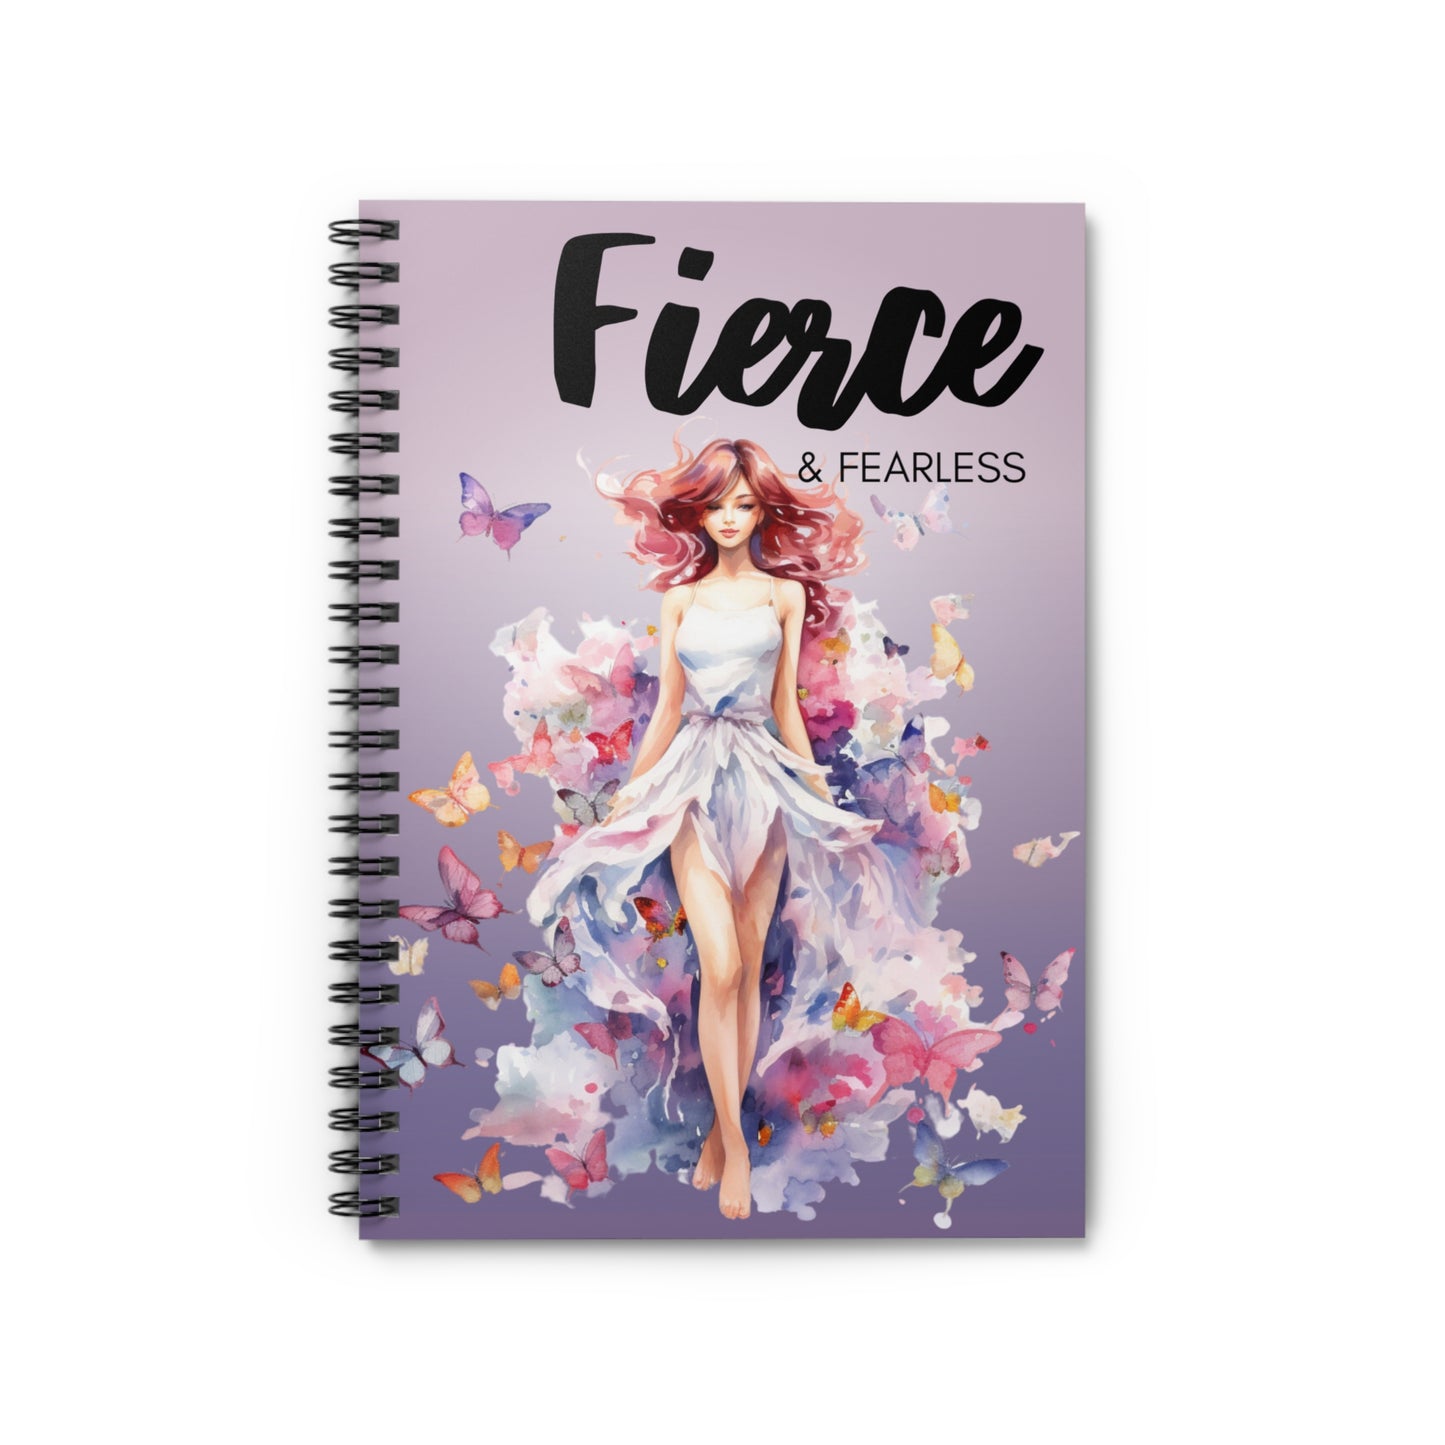 Spiral Notebook - Ruled Line 'Fierce & Fearless'